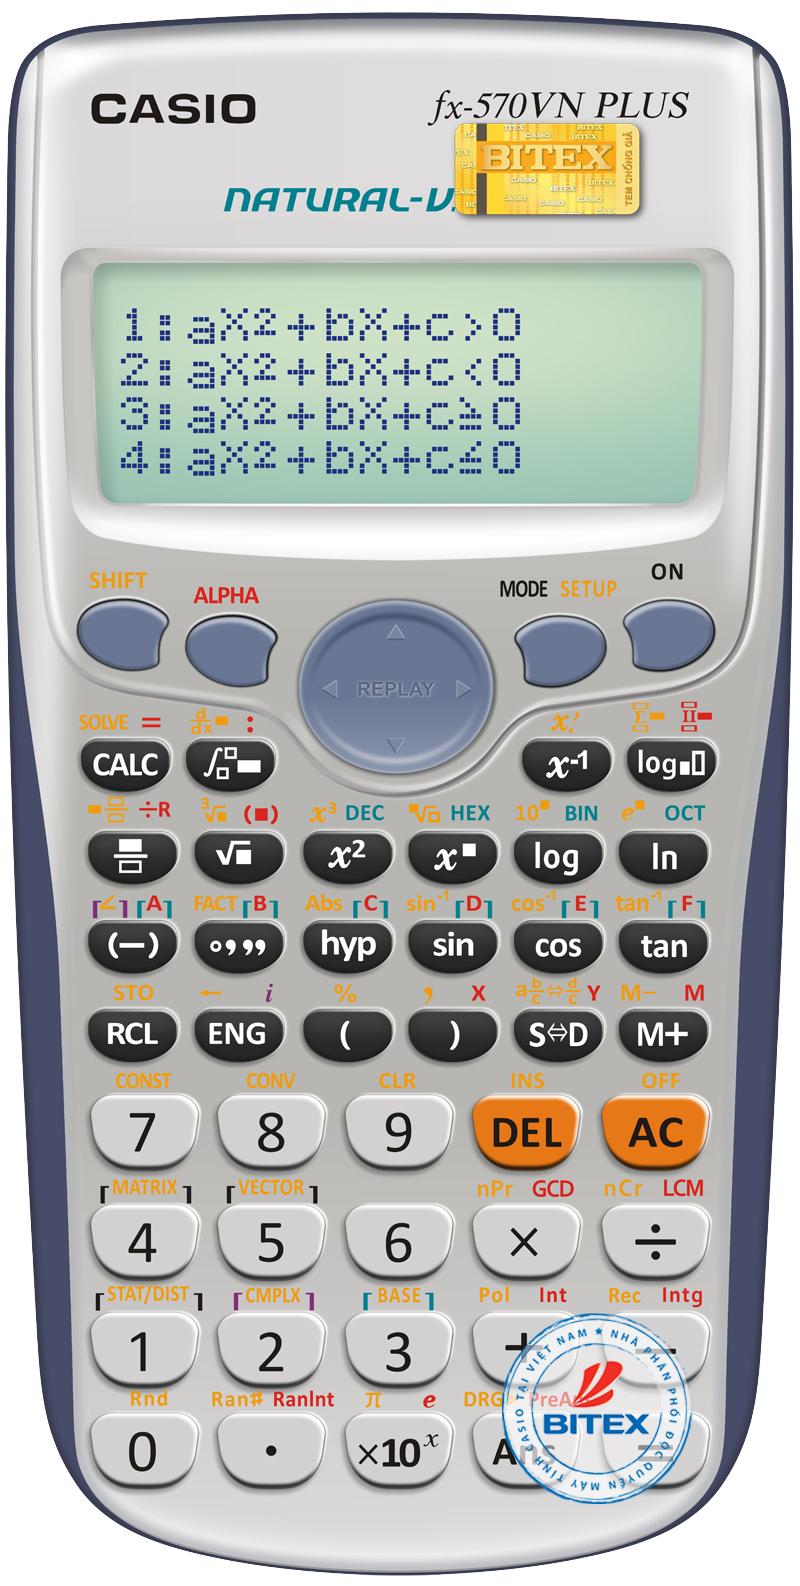 Máy tính Casio FX 570VN Plus là một sản phẩm tuyệt vời cho những ai đang học toán học hay khoa học. Với màn hình lớn và dung lượng tính toán nhanh chóng, máy tính này sẽ giúp bạn giải quyết các phép tính phức tạp và tiết kiệm thời gian trong quá trình học tập.